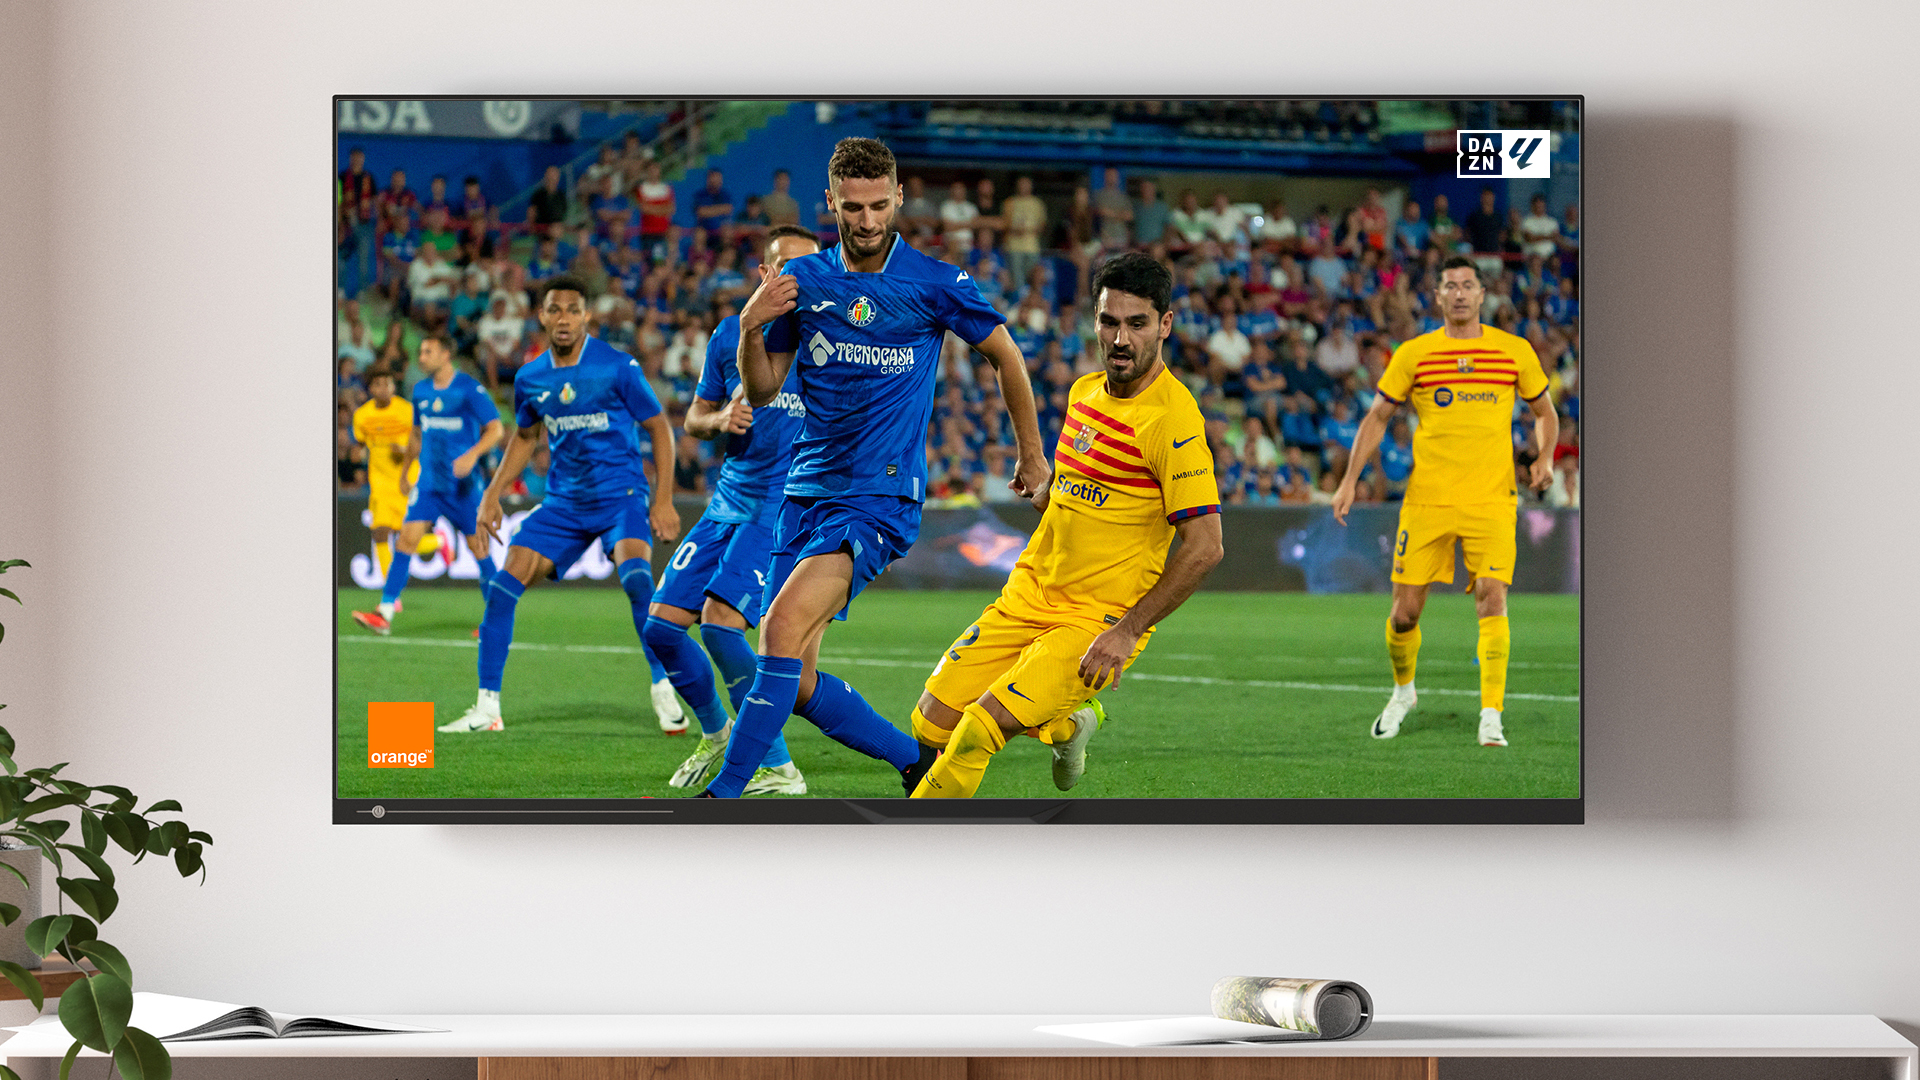 mabr pasra ver el fútbol en streaming con Orange TV